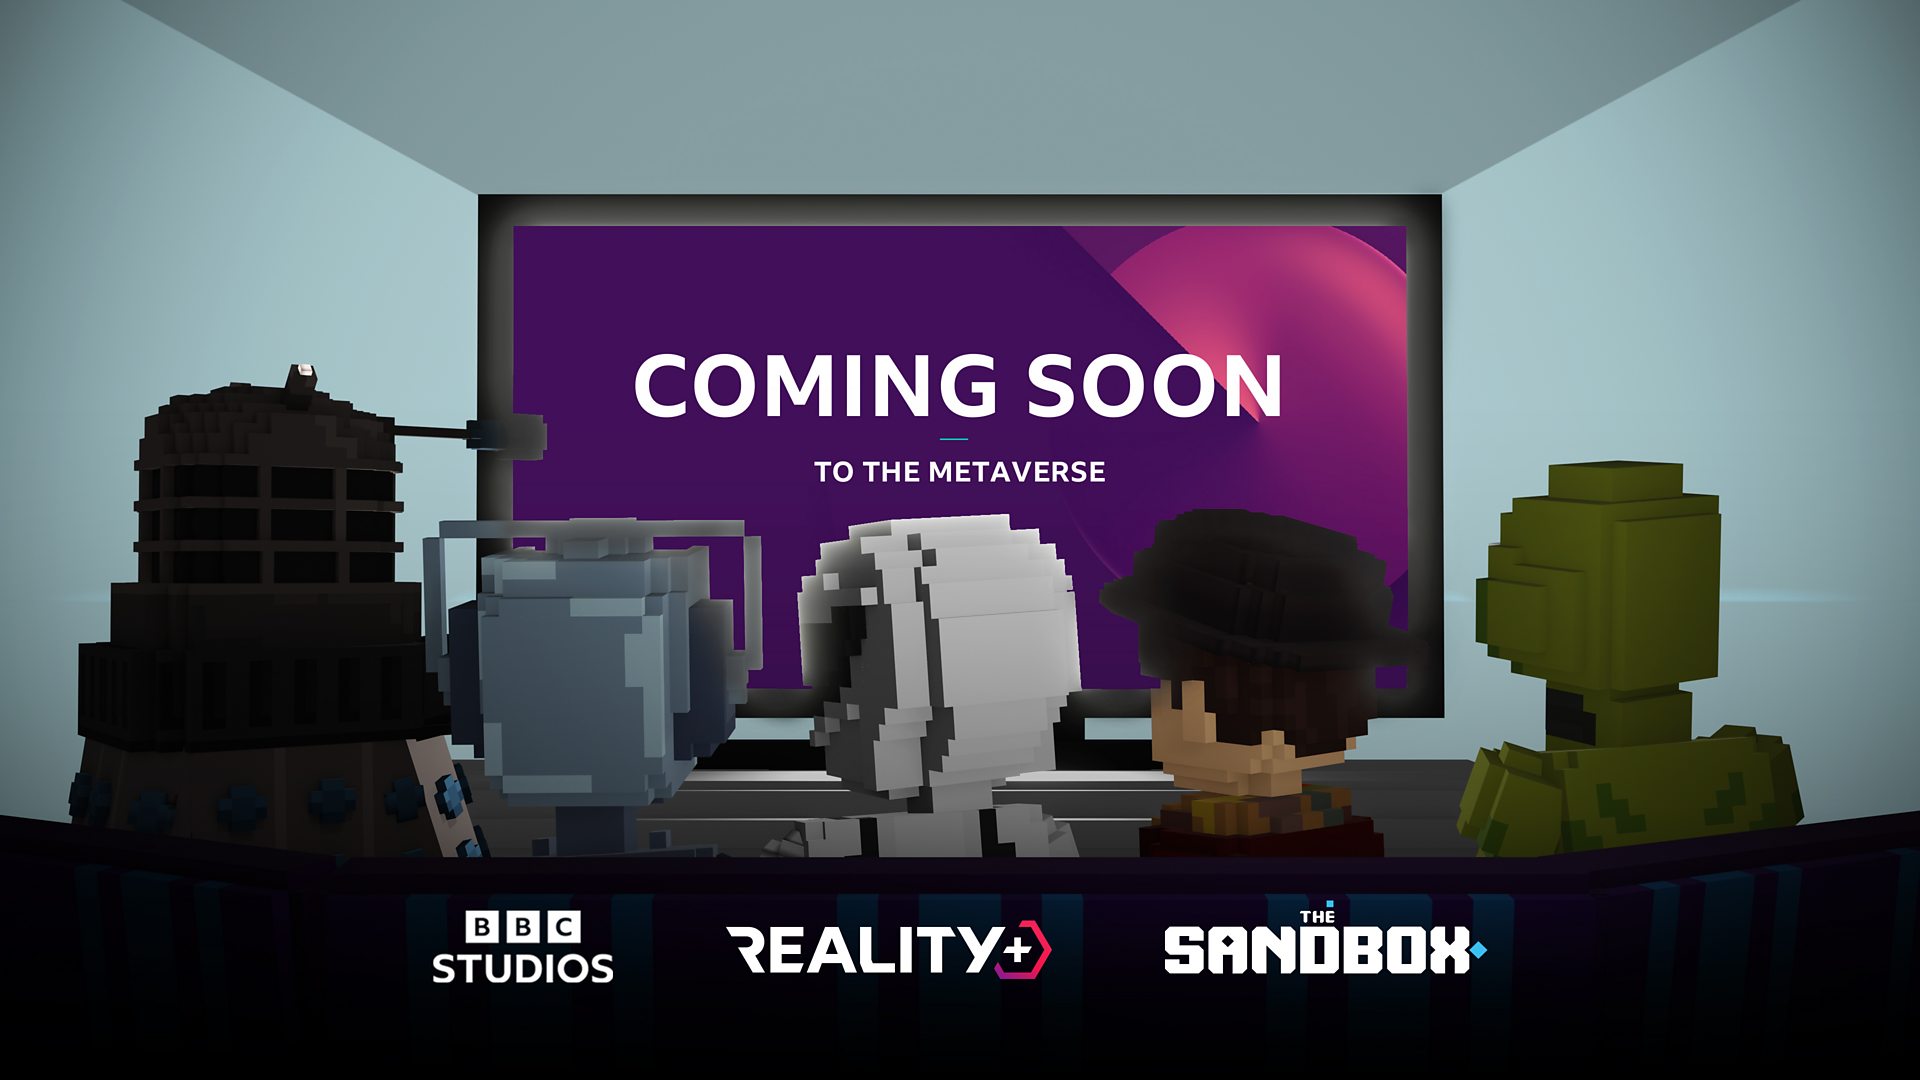 BBC Studios присоединяется к Reality+, чтобы раскрыть возможности метавселенной